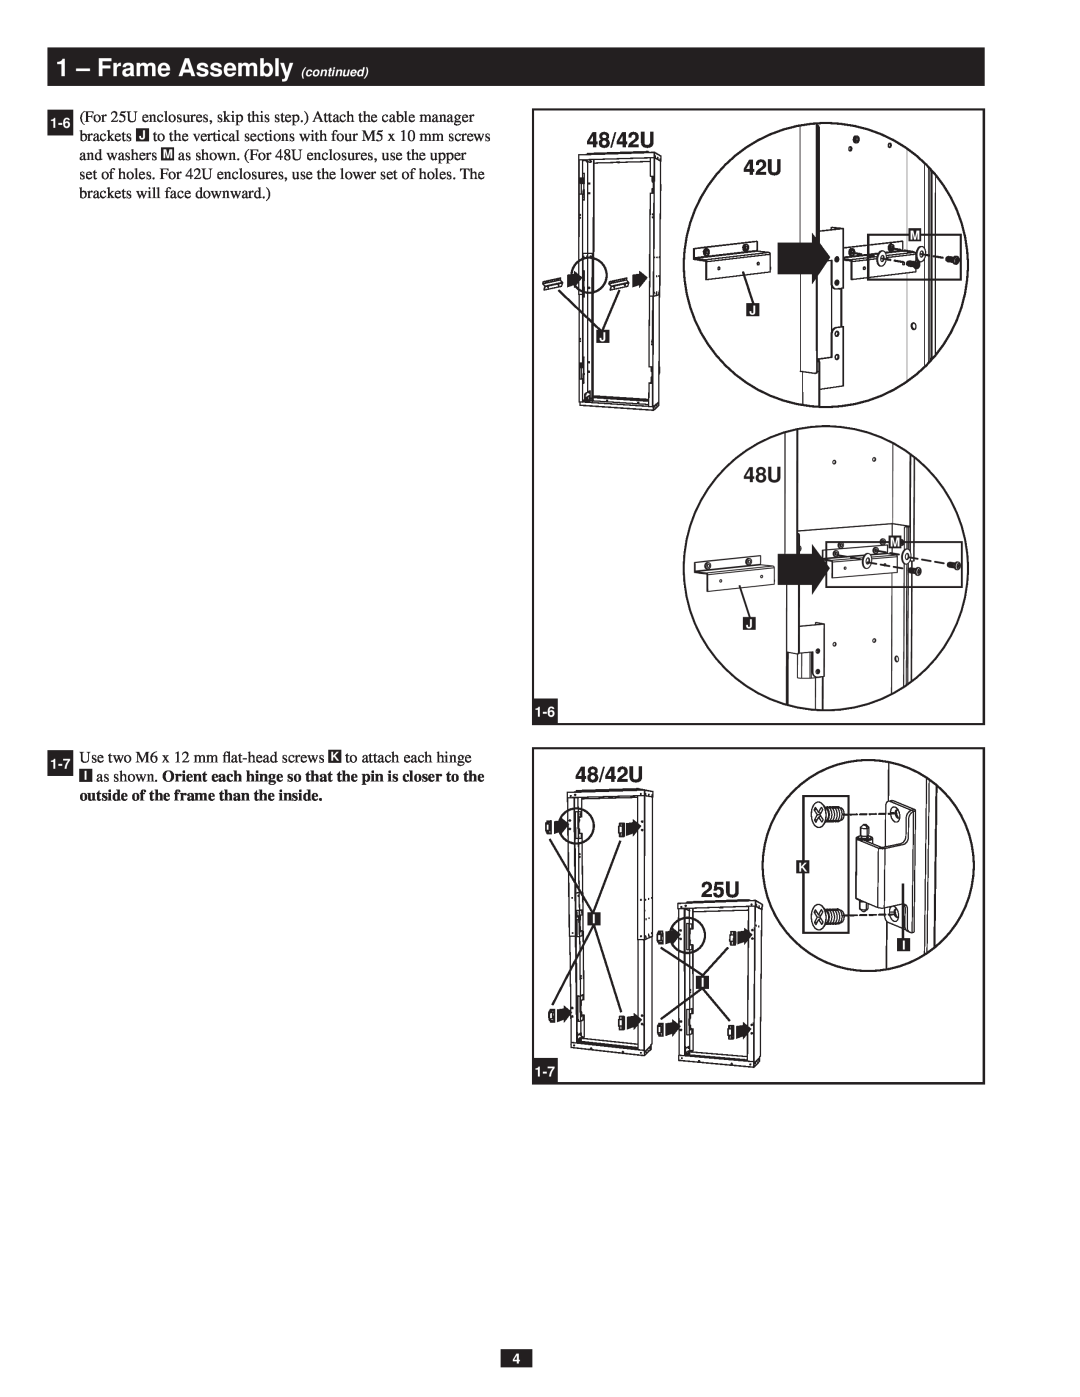 Tripp Lite SREXTENDER owner manual 48/42U, Frame Assembly continued 